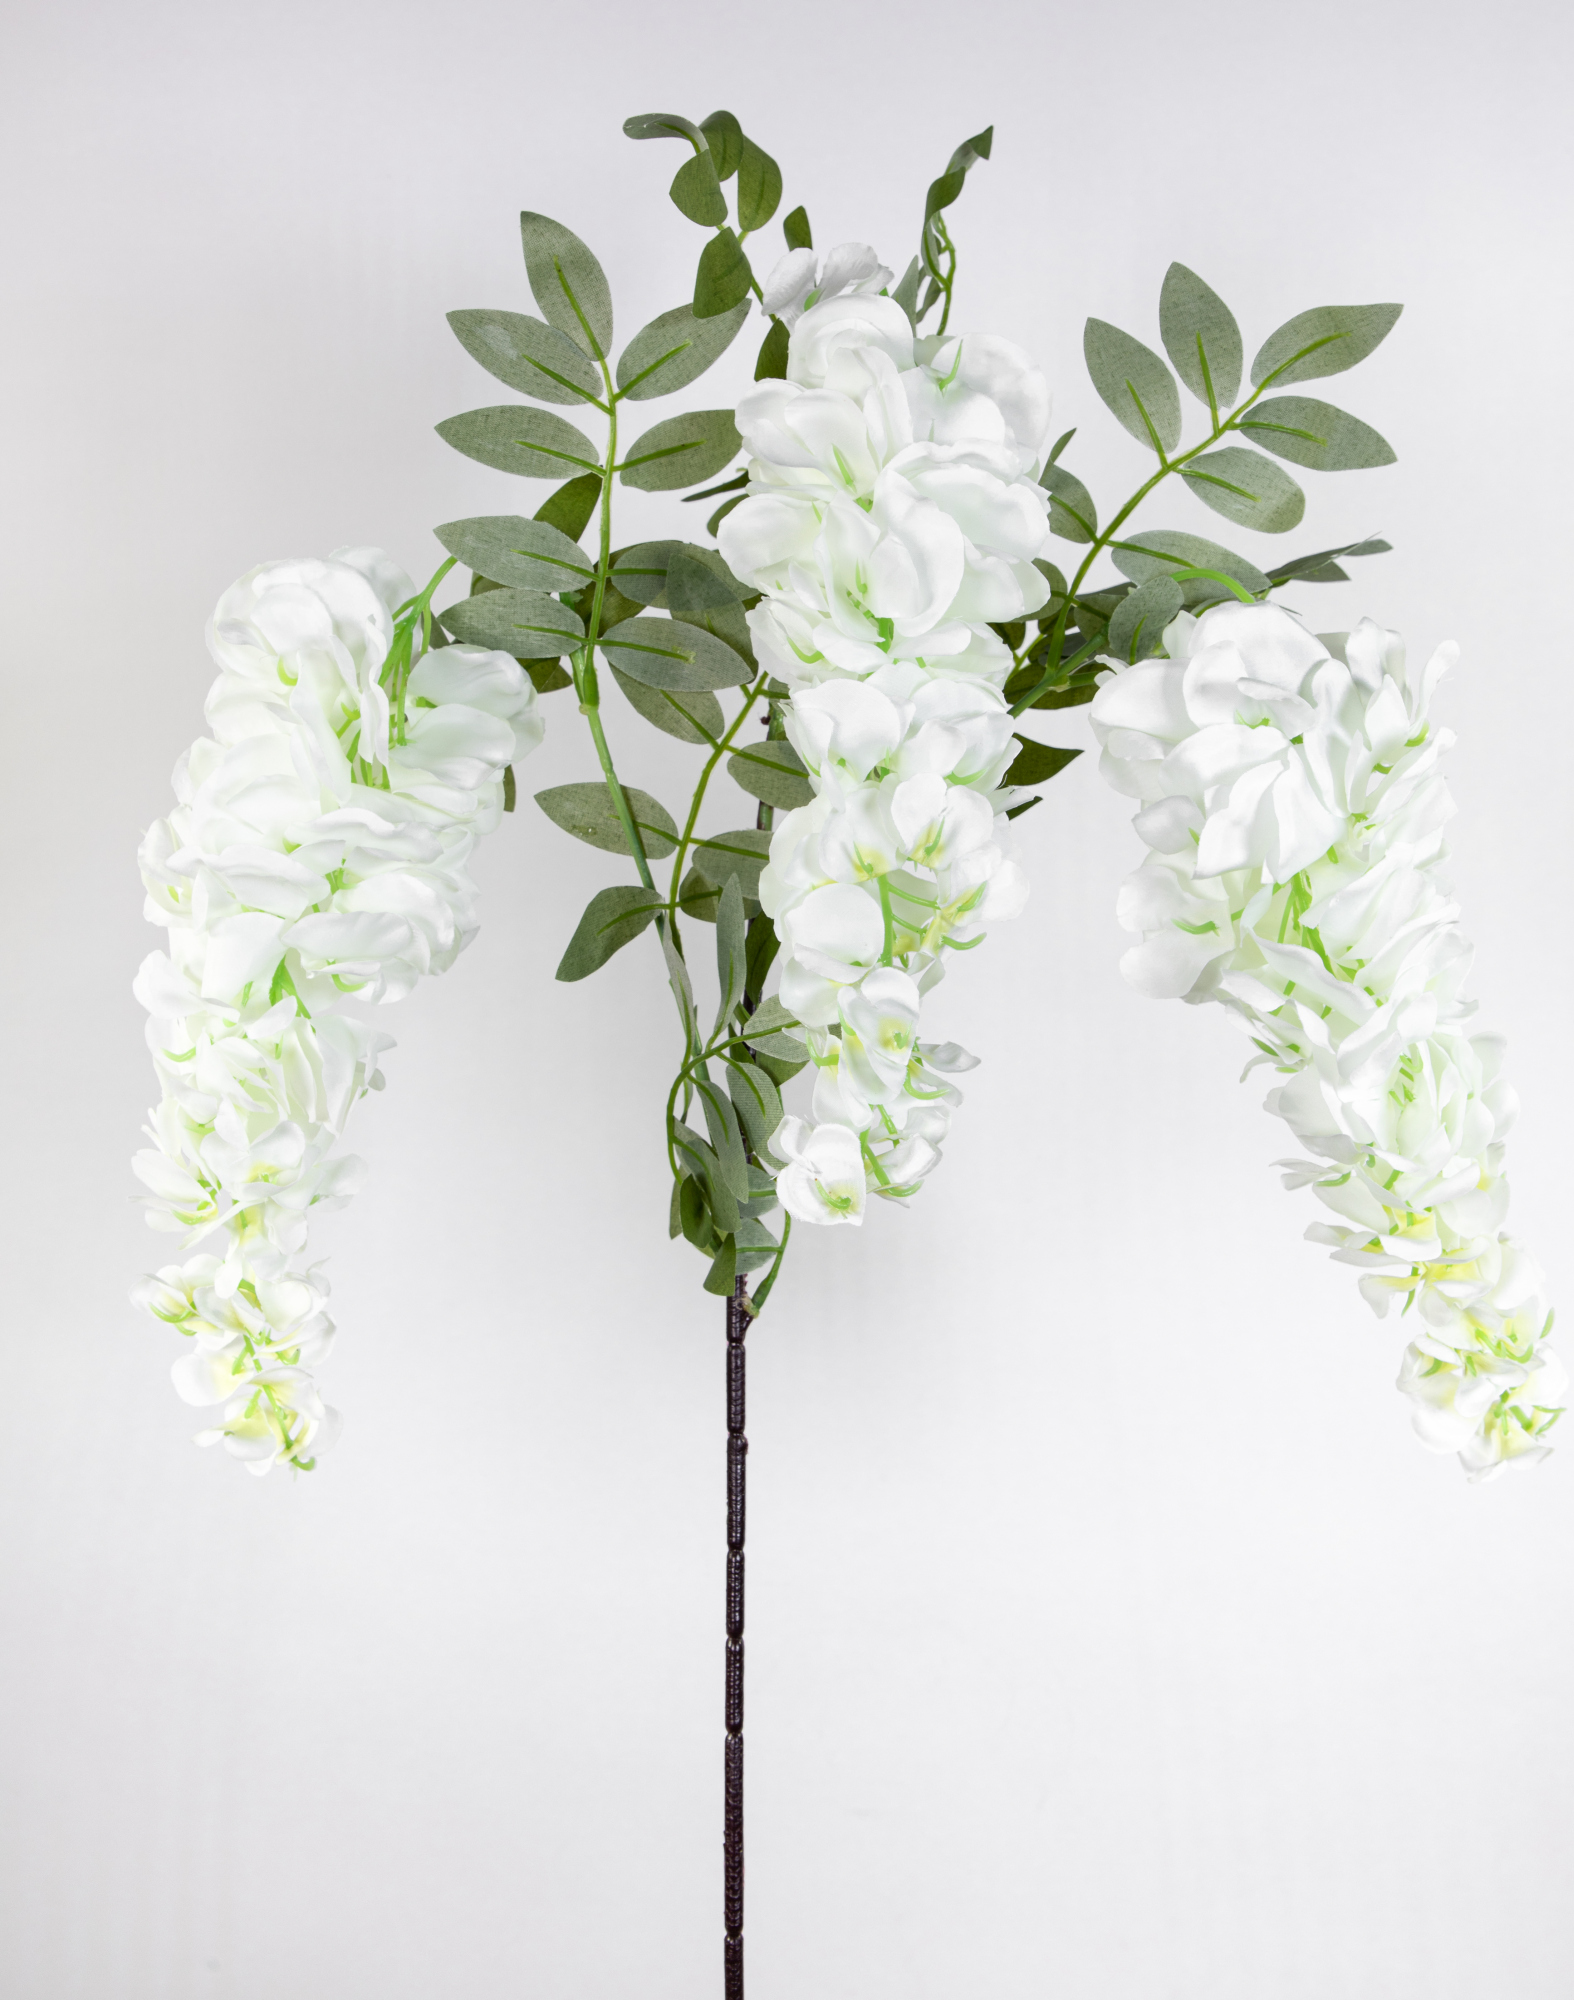 Wisteriazweig mit 3 großen Blütentrauben 75cm / 100cm weiß JA Künstlicher Blauregen Glyzine Blumen Kunstblumen Seidenblumen Dekoblumen Wisteria